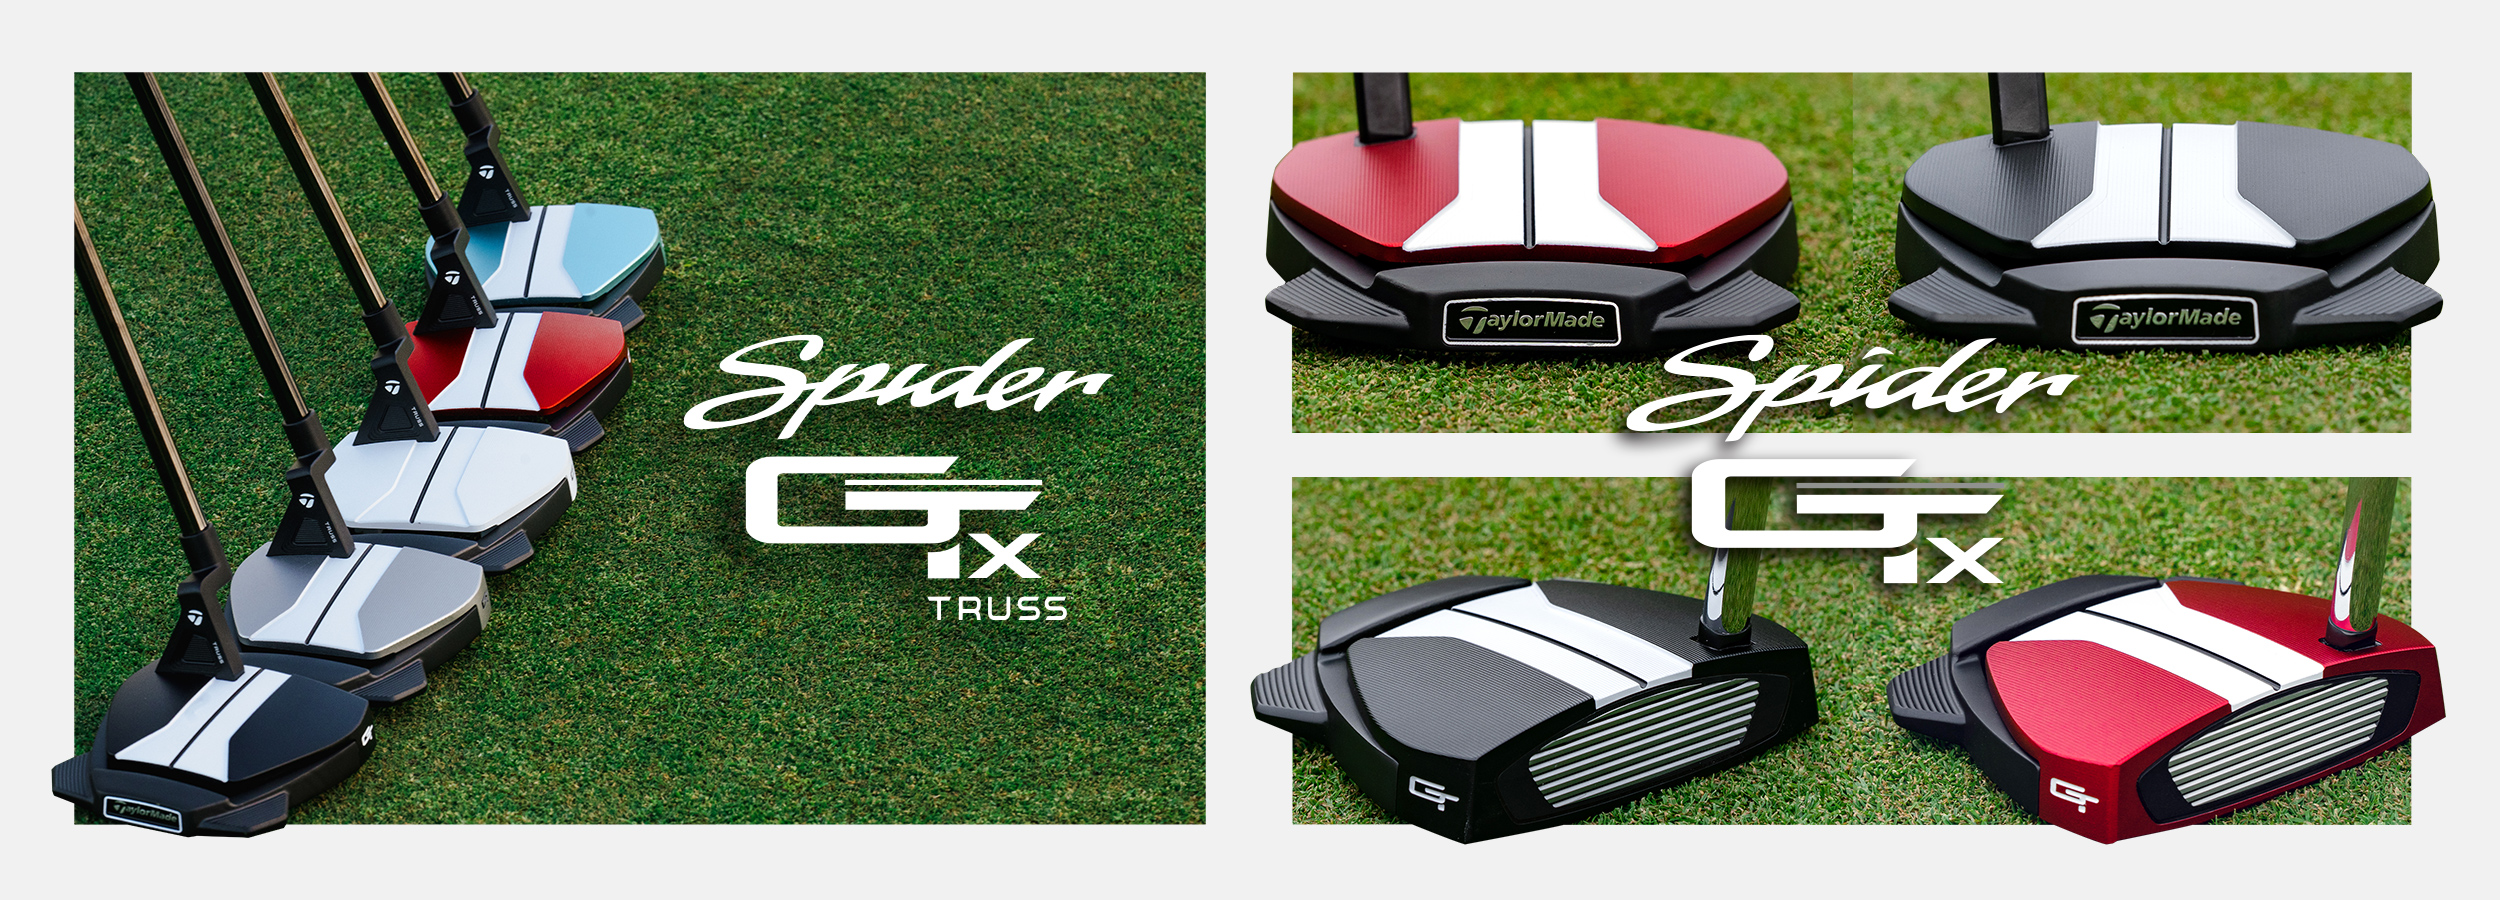 スパイダーGT X レッド トラスセンター パター | SPIDER GT X RED TRUSS | TaylorMade Golf |  テーラーメイド ゴルフ公式サイト